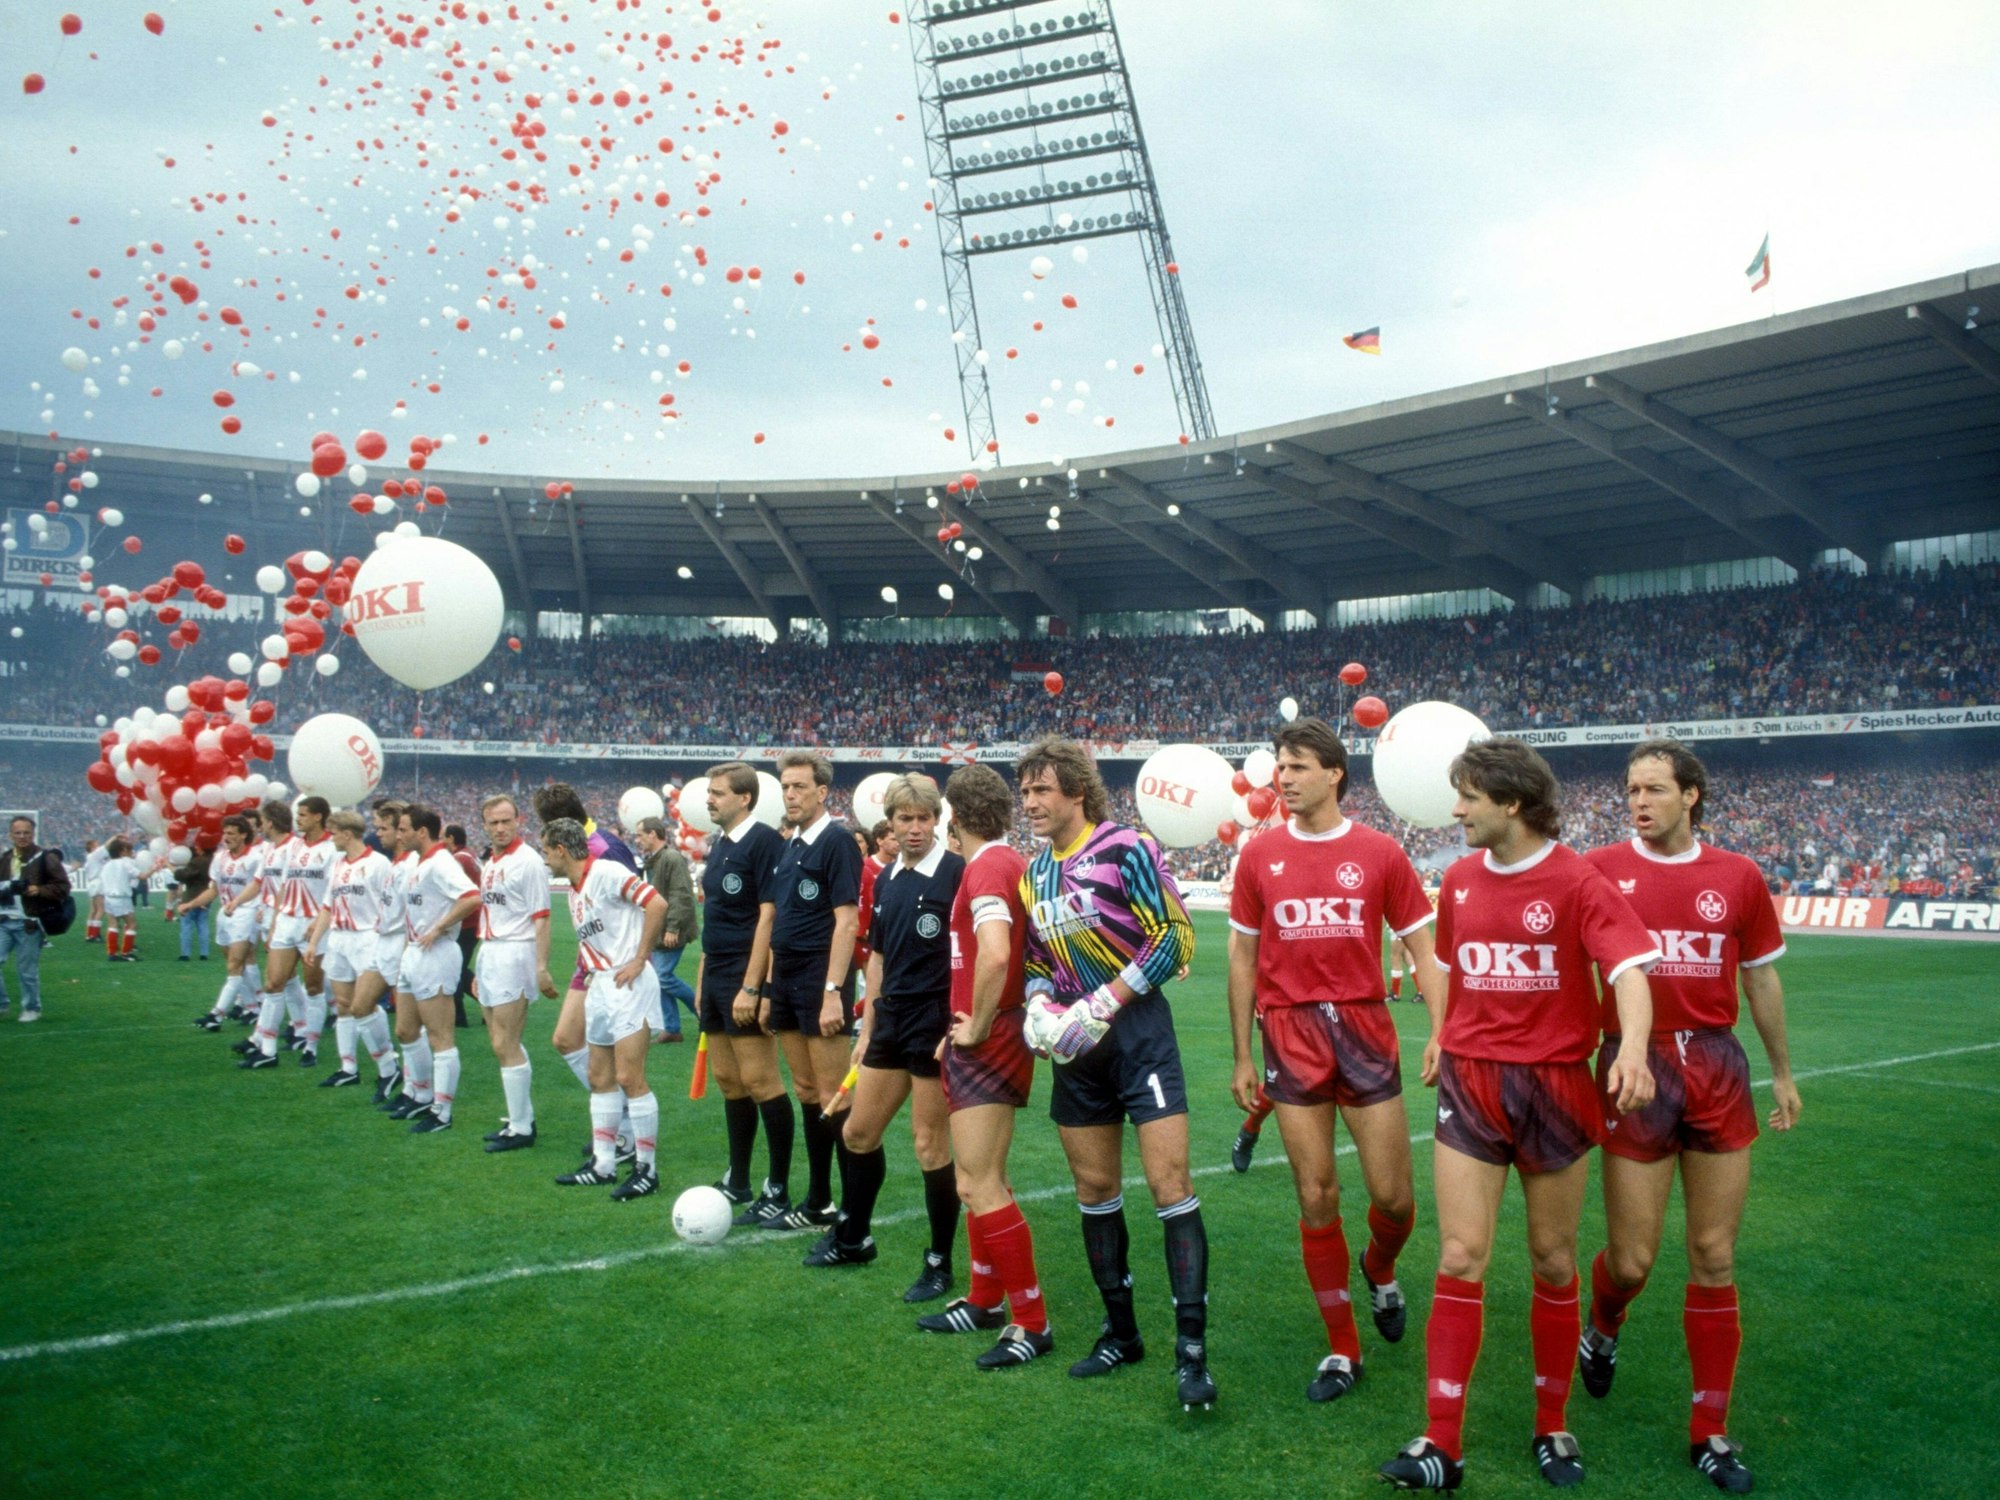 Die Spieler der Mannschaften von Kaiserslautern und Köln stellen sich vor dem Spiel im Müngersdorfer Stadion auf. Ballons in Rot und Weiß fliegen in die Luft.